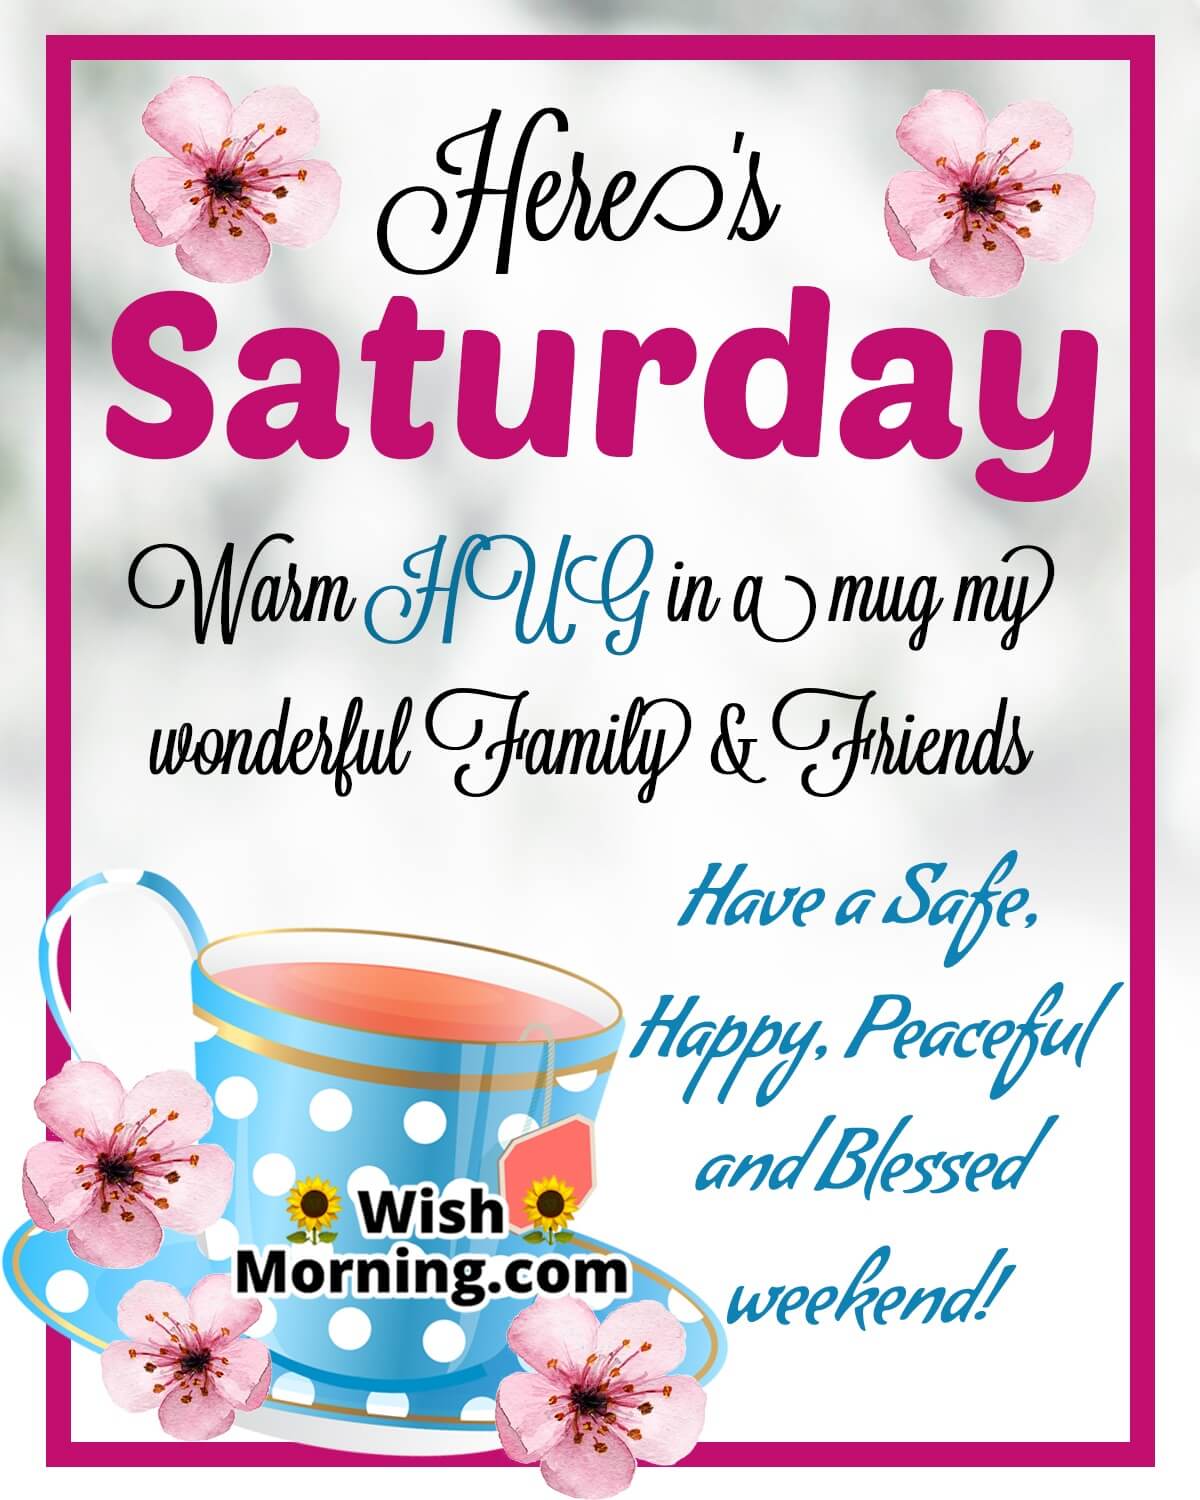 Splendid Saturday Morning Quotes Wishes - Wish Morning